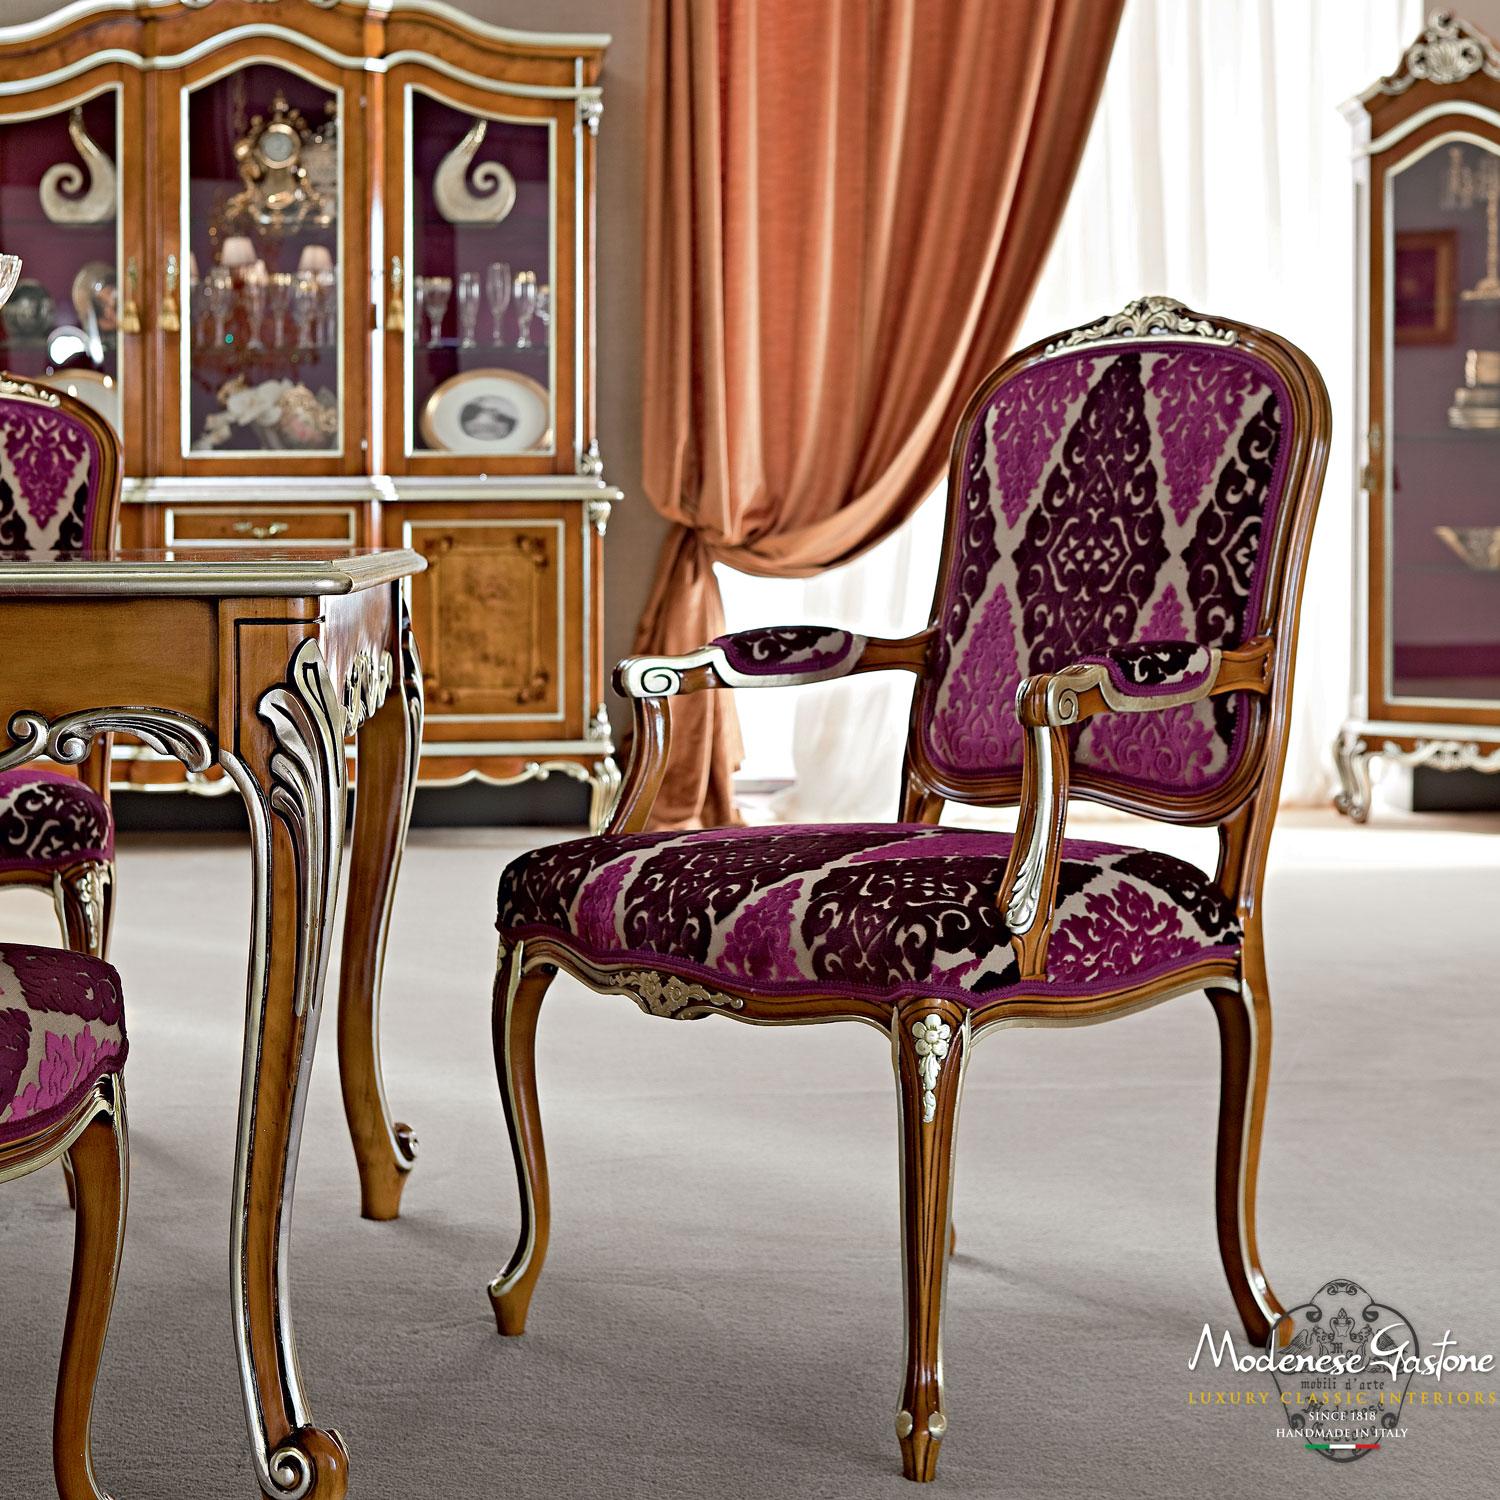 Vervollständigen Sie Ihr schickes, luxuriöses Esszimmer mit diesem viktorianischen Beistellstuhl für den täglichen Gebrauch, dessen Holzrahmen in natürlichem Nussbaum lackiert und mit Blattsilberapplikationen versehen ist. Das Sitzkissen ist mit